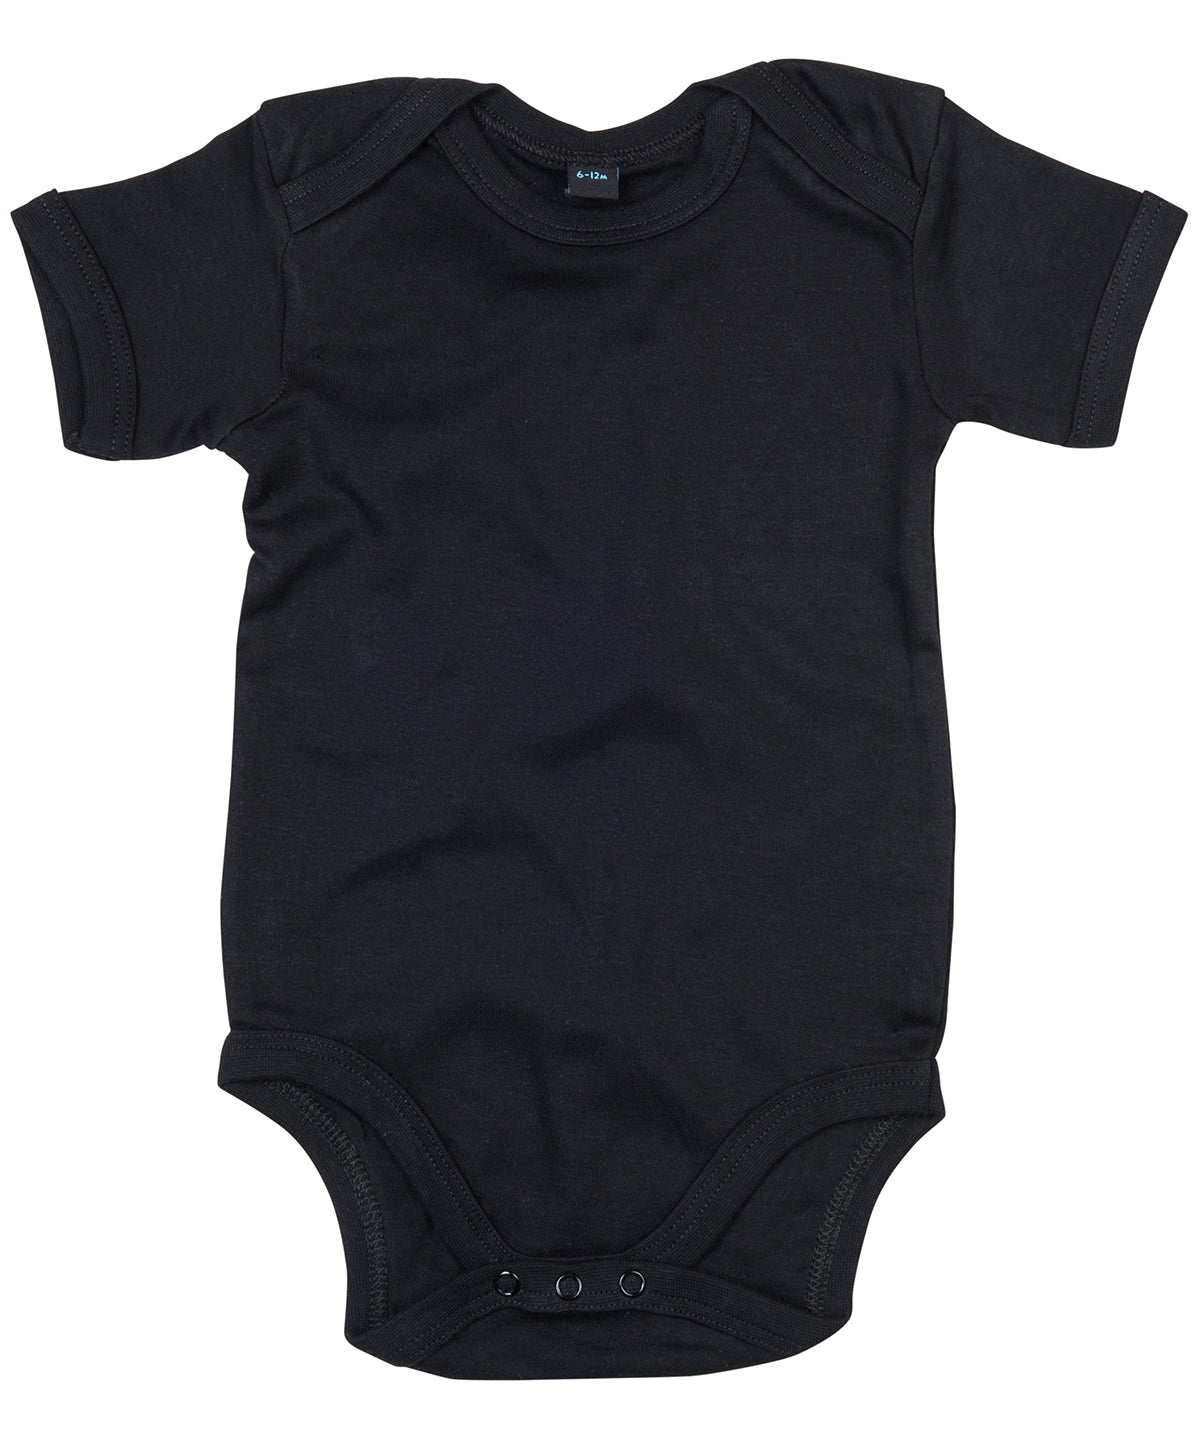 Personalised Name Black Baby Vest